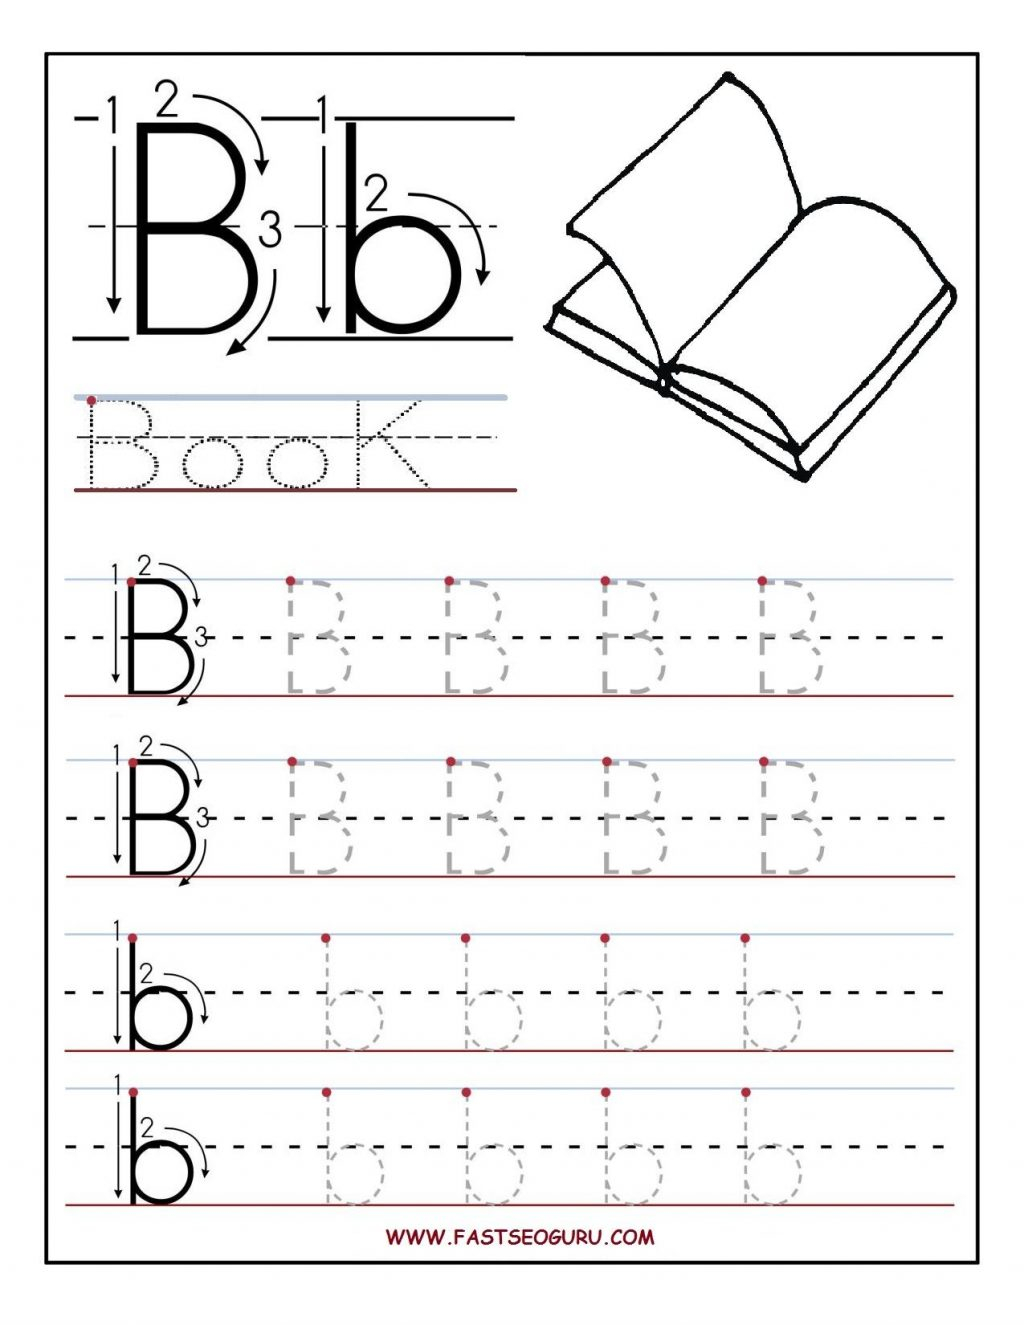 Worksheet ~ Tracing Worksheets For Preschoolers Preschool inside Alphabet Worksheets Nursery